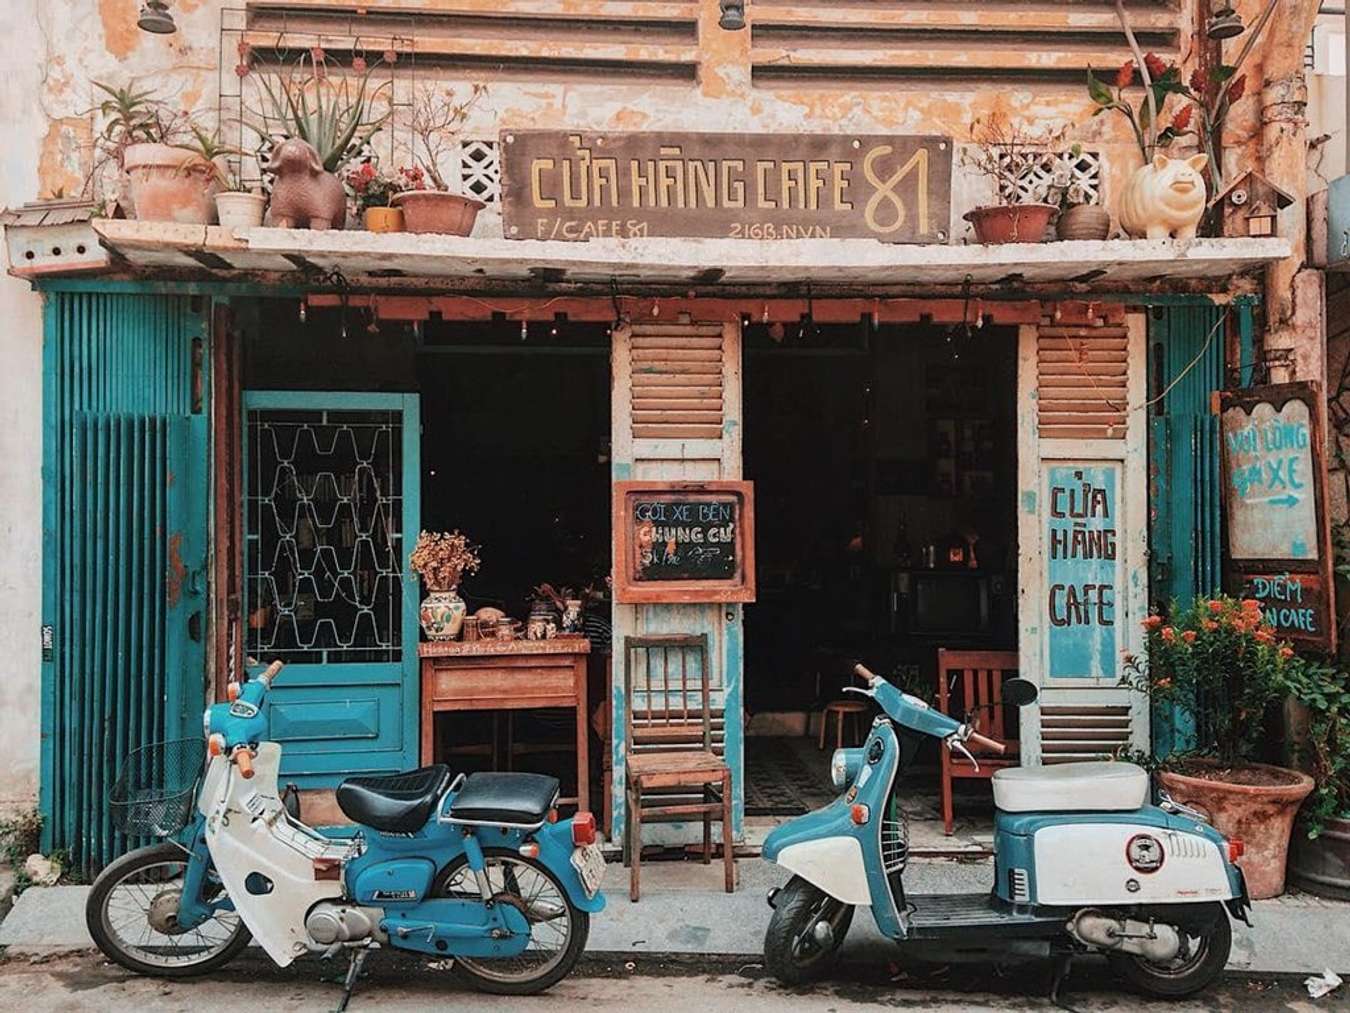 7 Quán Cafe Sài Gòn Xưa Với Không Gian Hoài Niệm